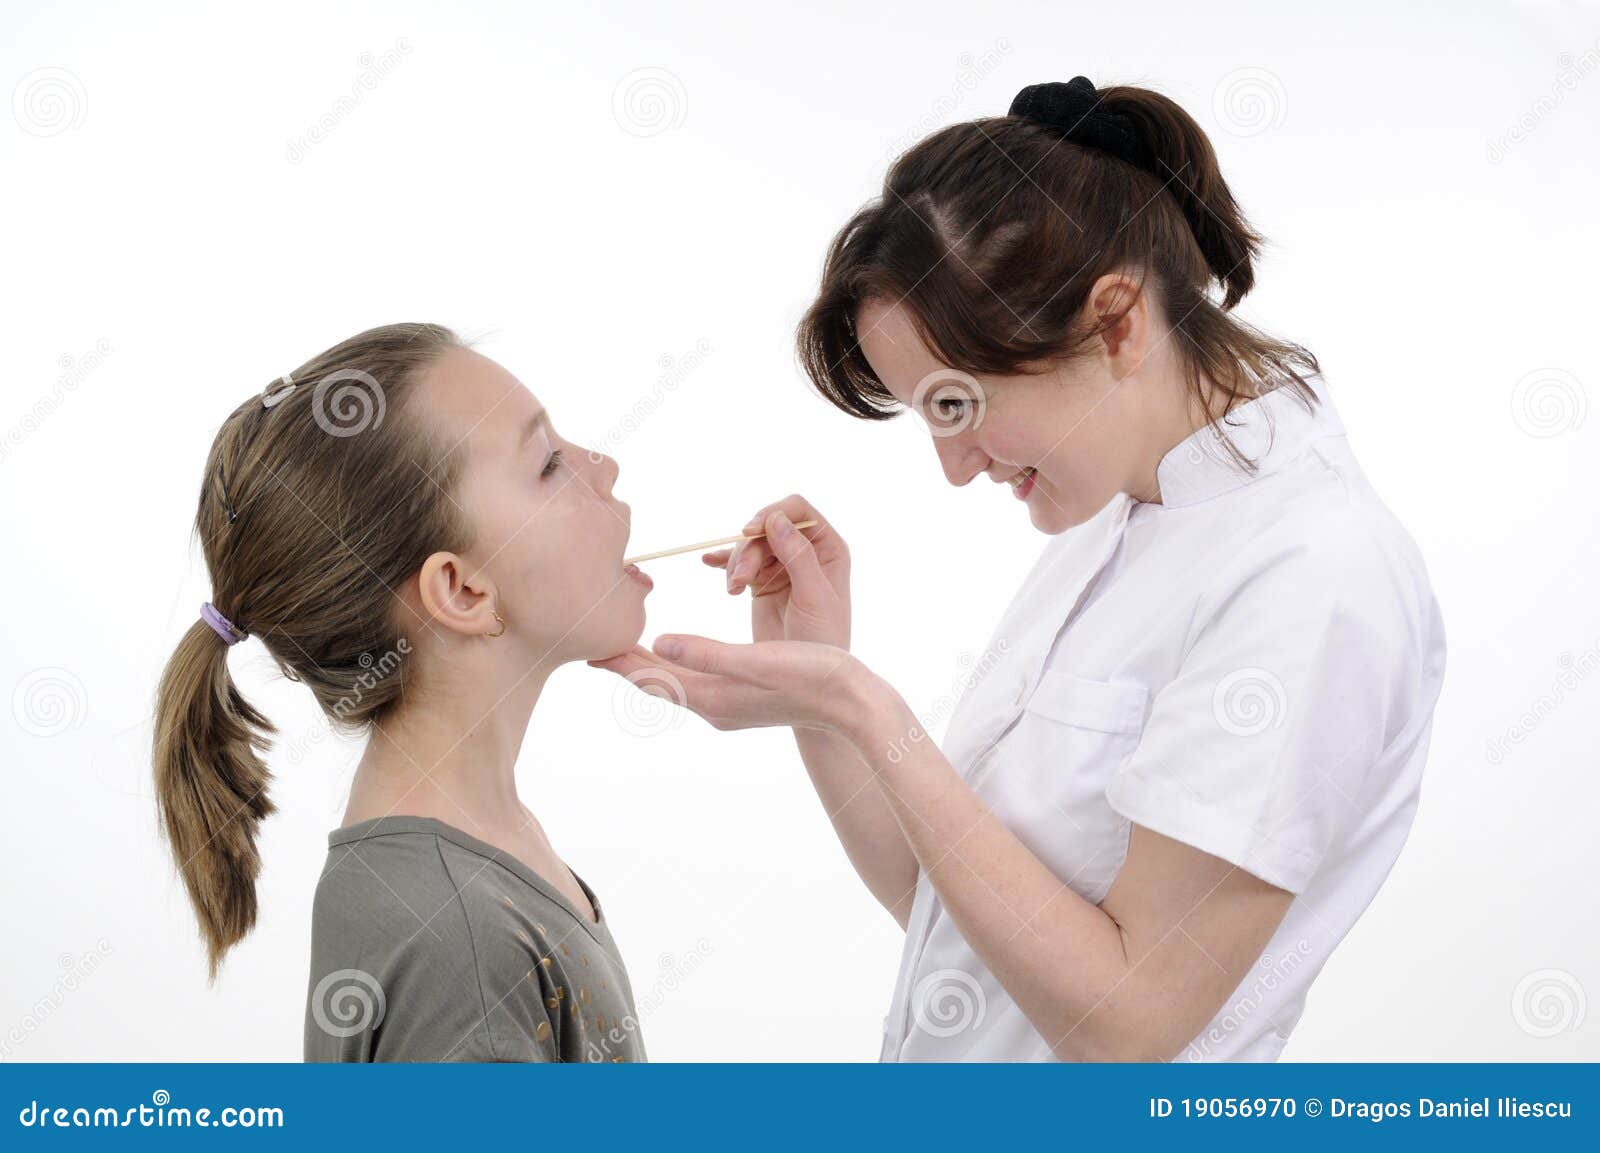 Дочка рот рассказ. Маленькая девочка рот доктор. Доктор изучает девочку подростка. Доктор осматривает рот девочки. Врач смотрит рот девочки.